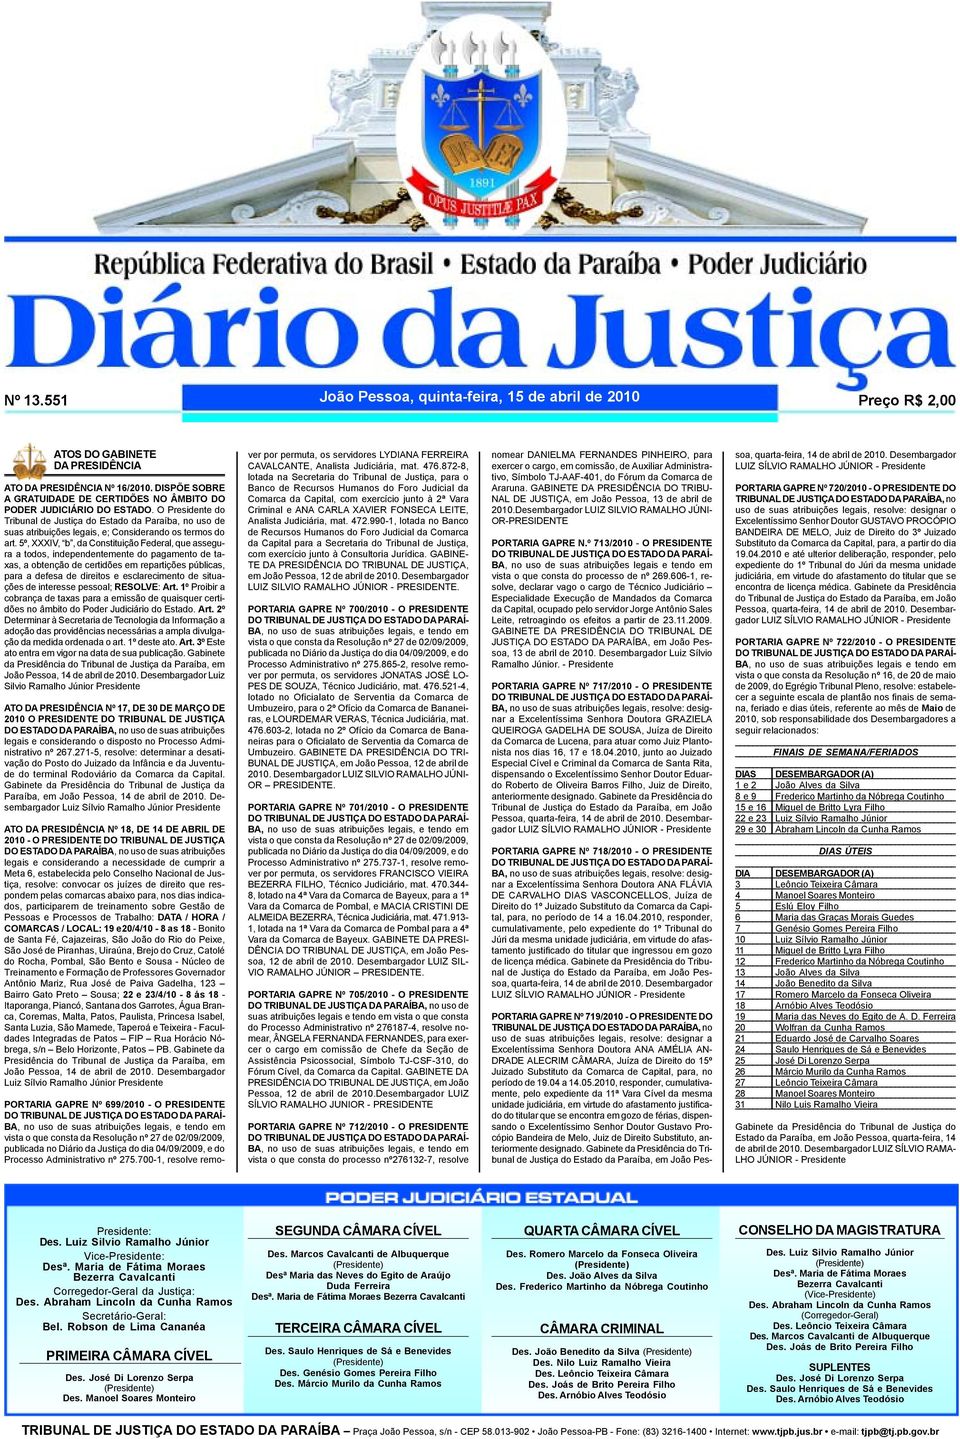 O Presidente do Tribunal de Justiça do Estado da Paraíba, no uso de suas atribuições legais, e; Considerando os termos do art.